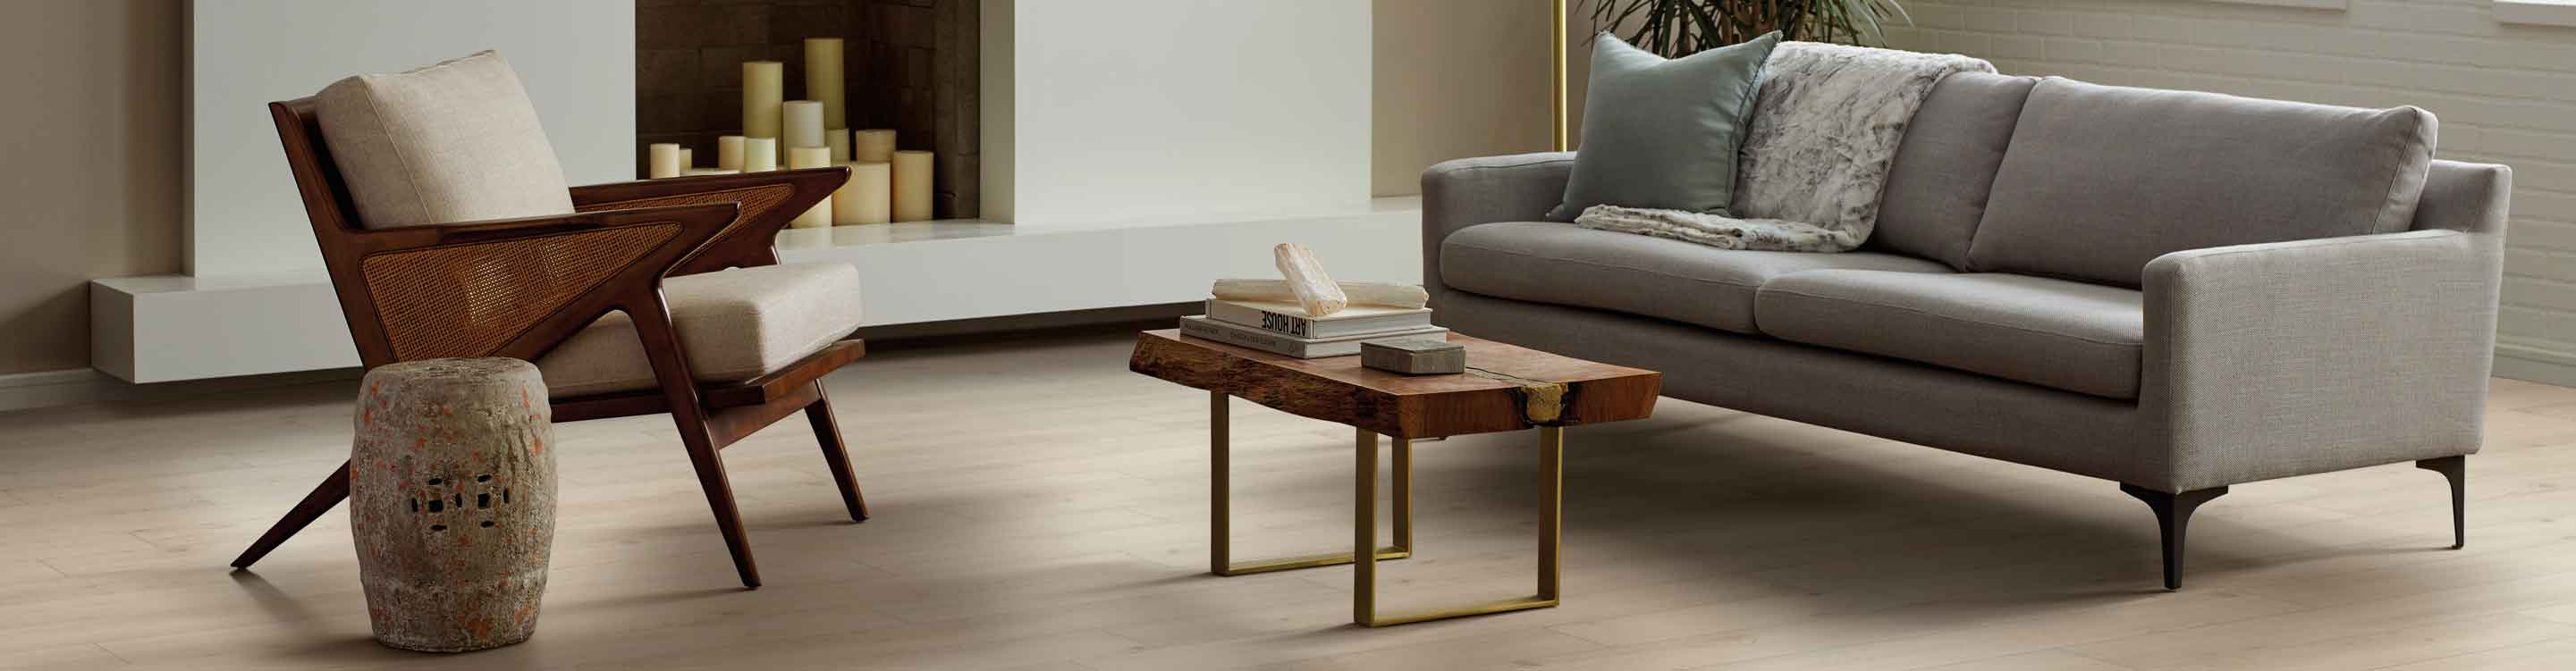 woodlook vinyl flooring in living room